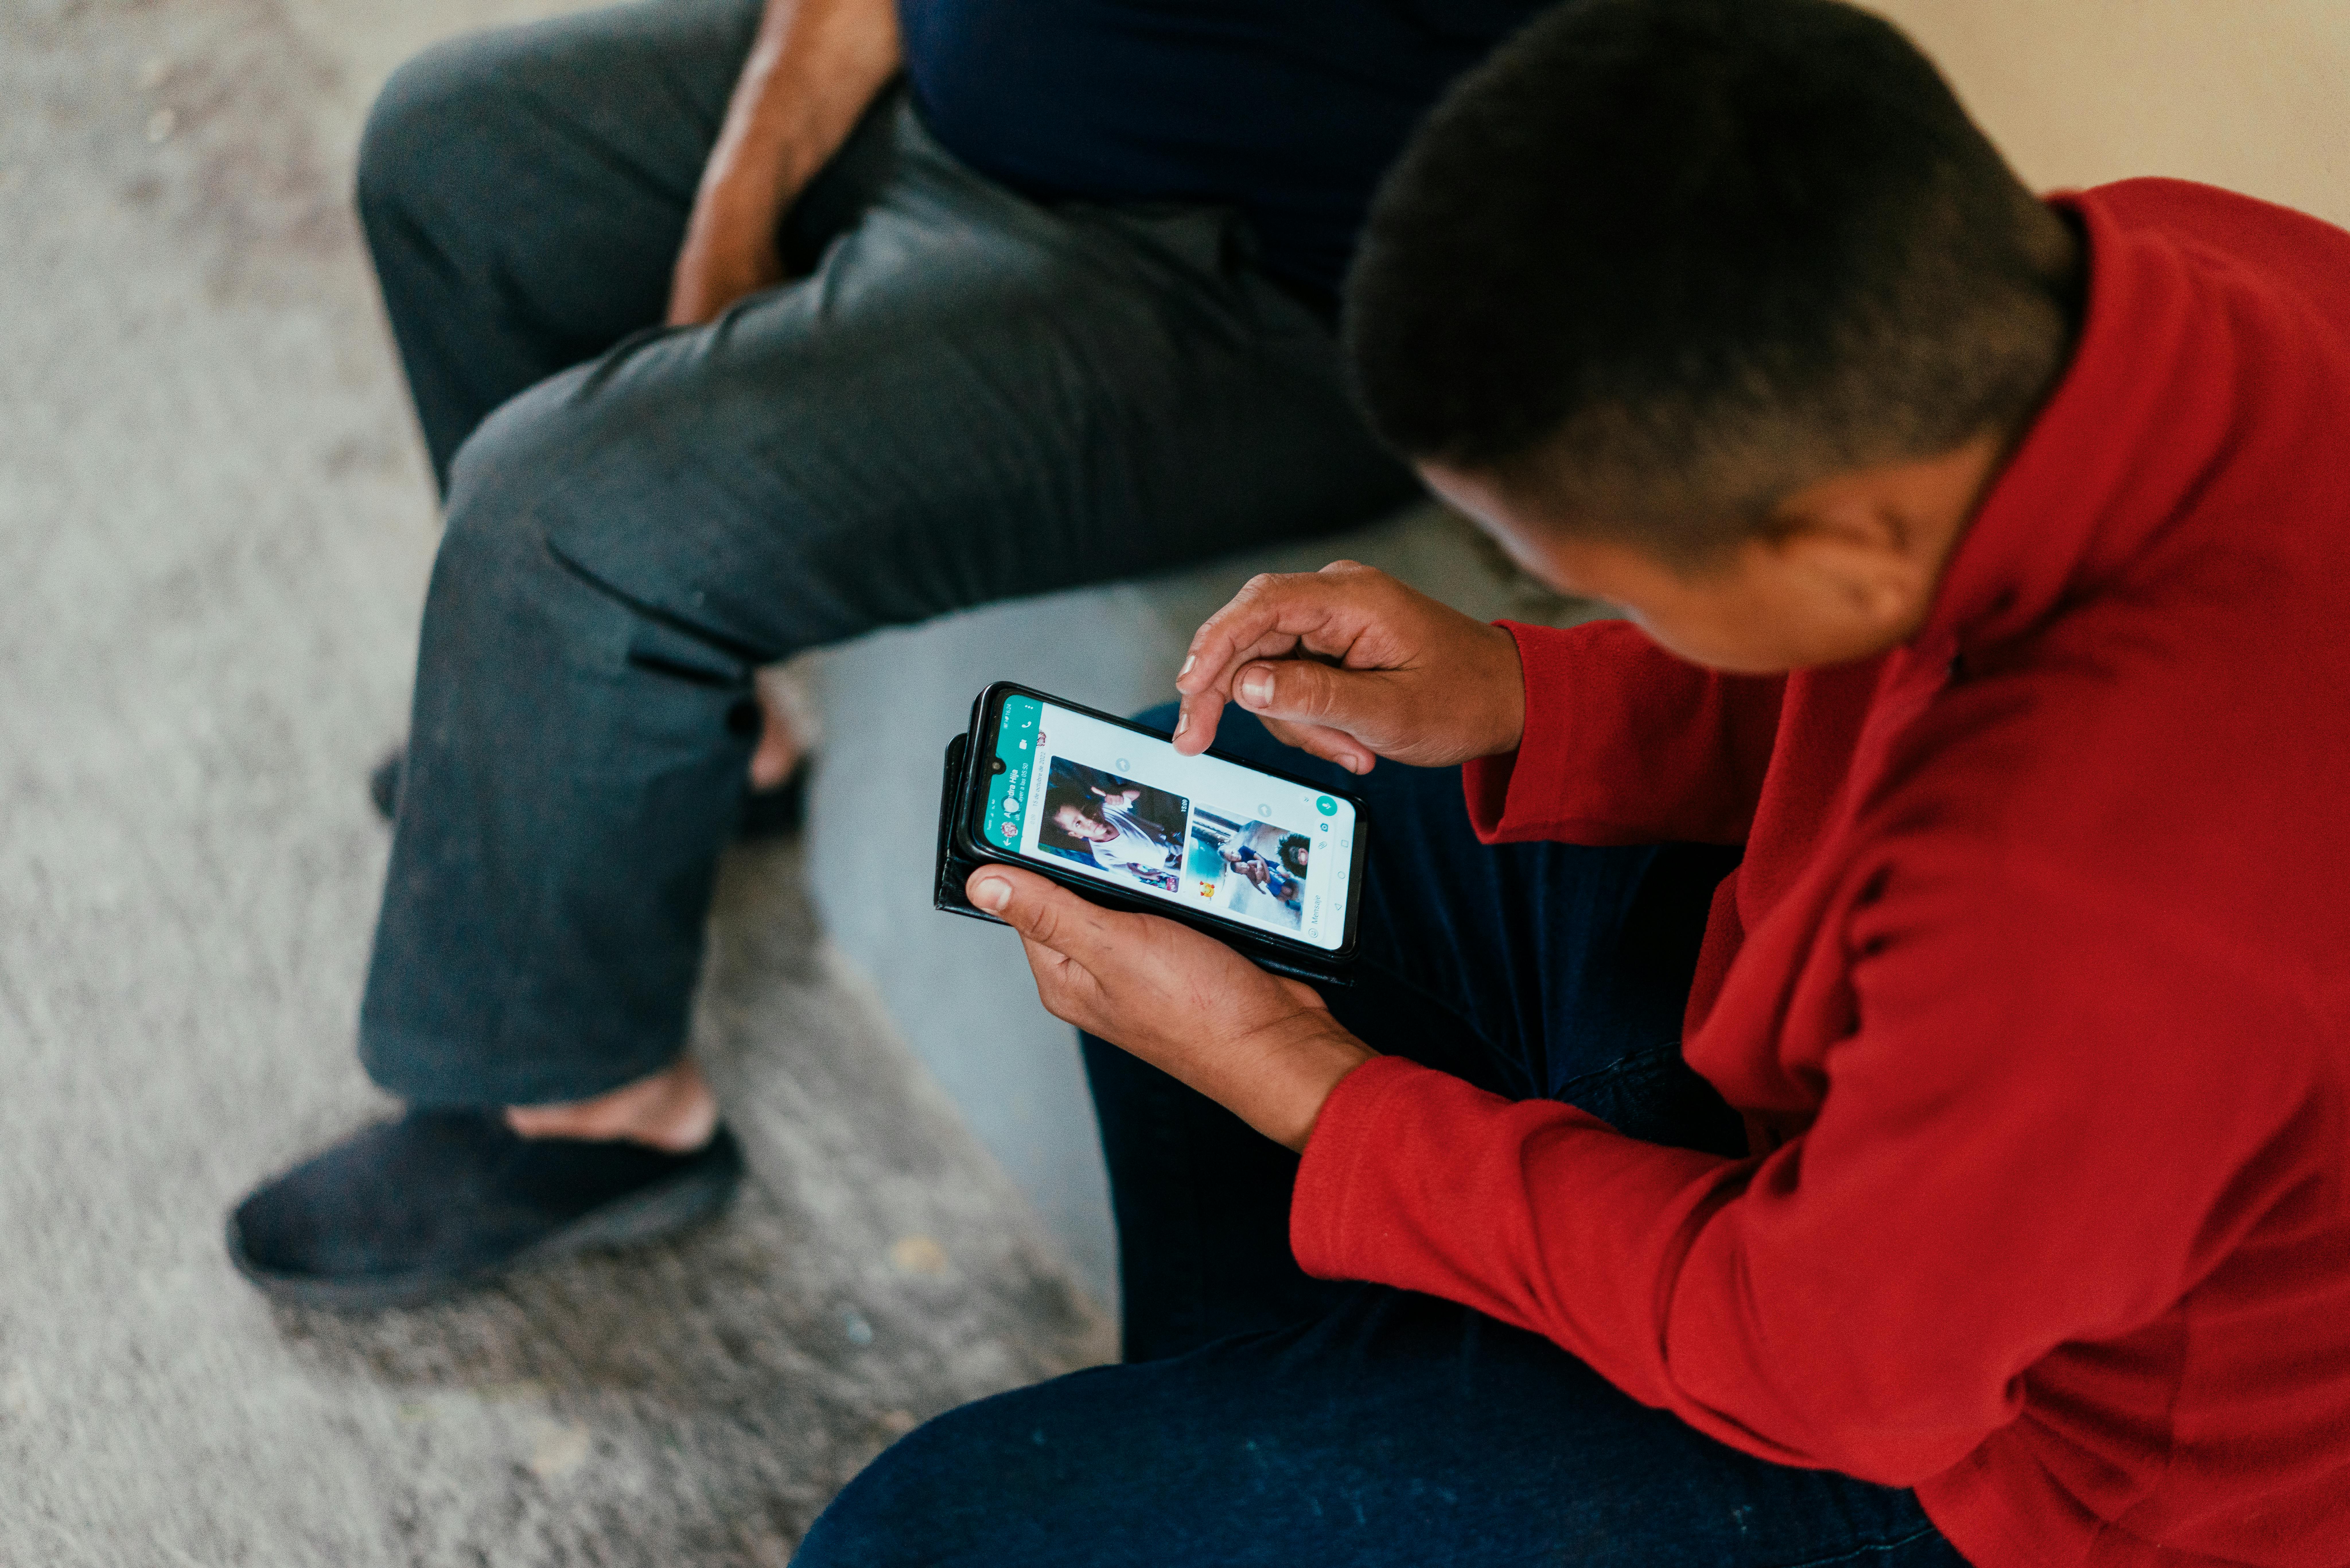 Ecuador: Felix chiama la sua famiglia in Venezuela dal patio di casa sua dove ha segnale internet. La sua famiglia fa parte del Programma di Protezione Integrale (IPP) promosso dall'UNICEF per proteggere i bambini e gli adolescenti venezuelani e le loro famiglie in movimento